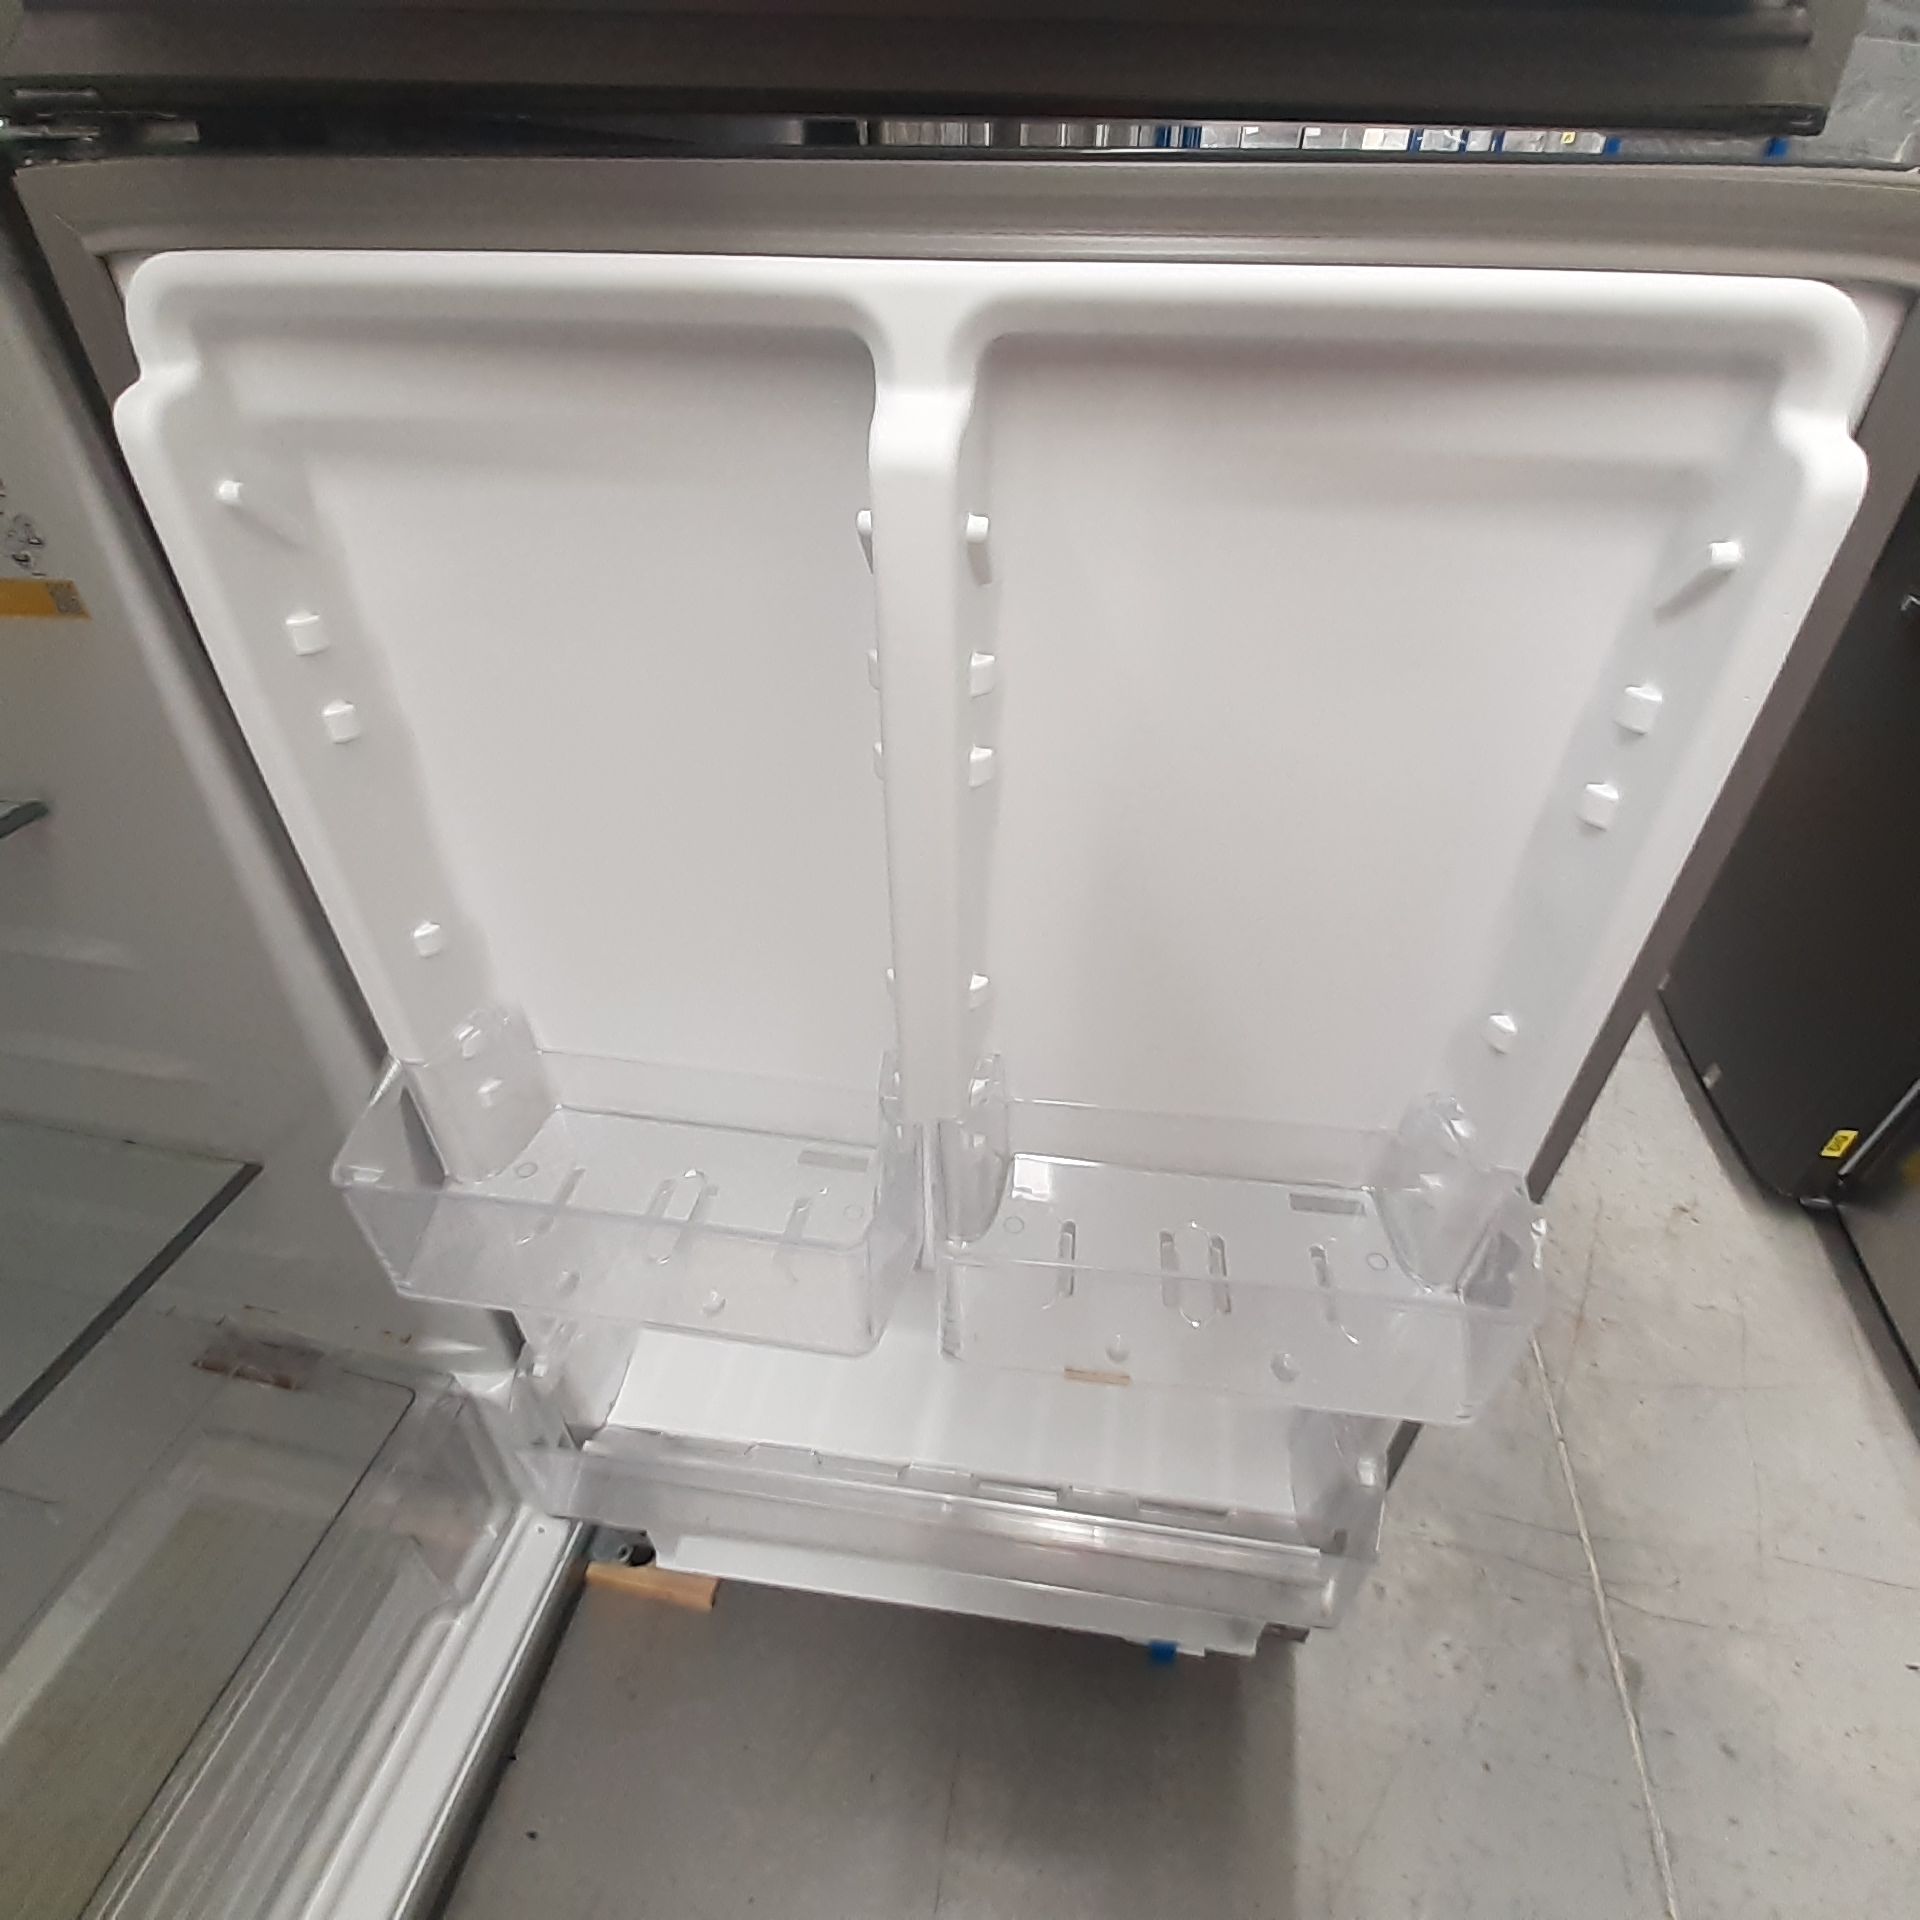 Lote De 2 Refrigeradores: 1 Refrigerador Marca Whirlpool, 1 Refrigerador Marca Mabe, Distintos Model - Image 21 of 22